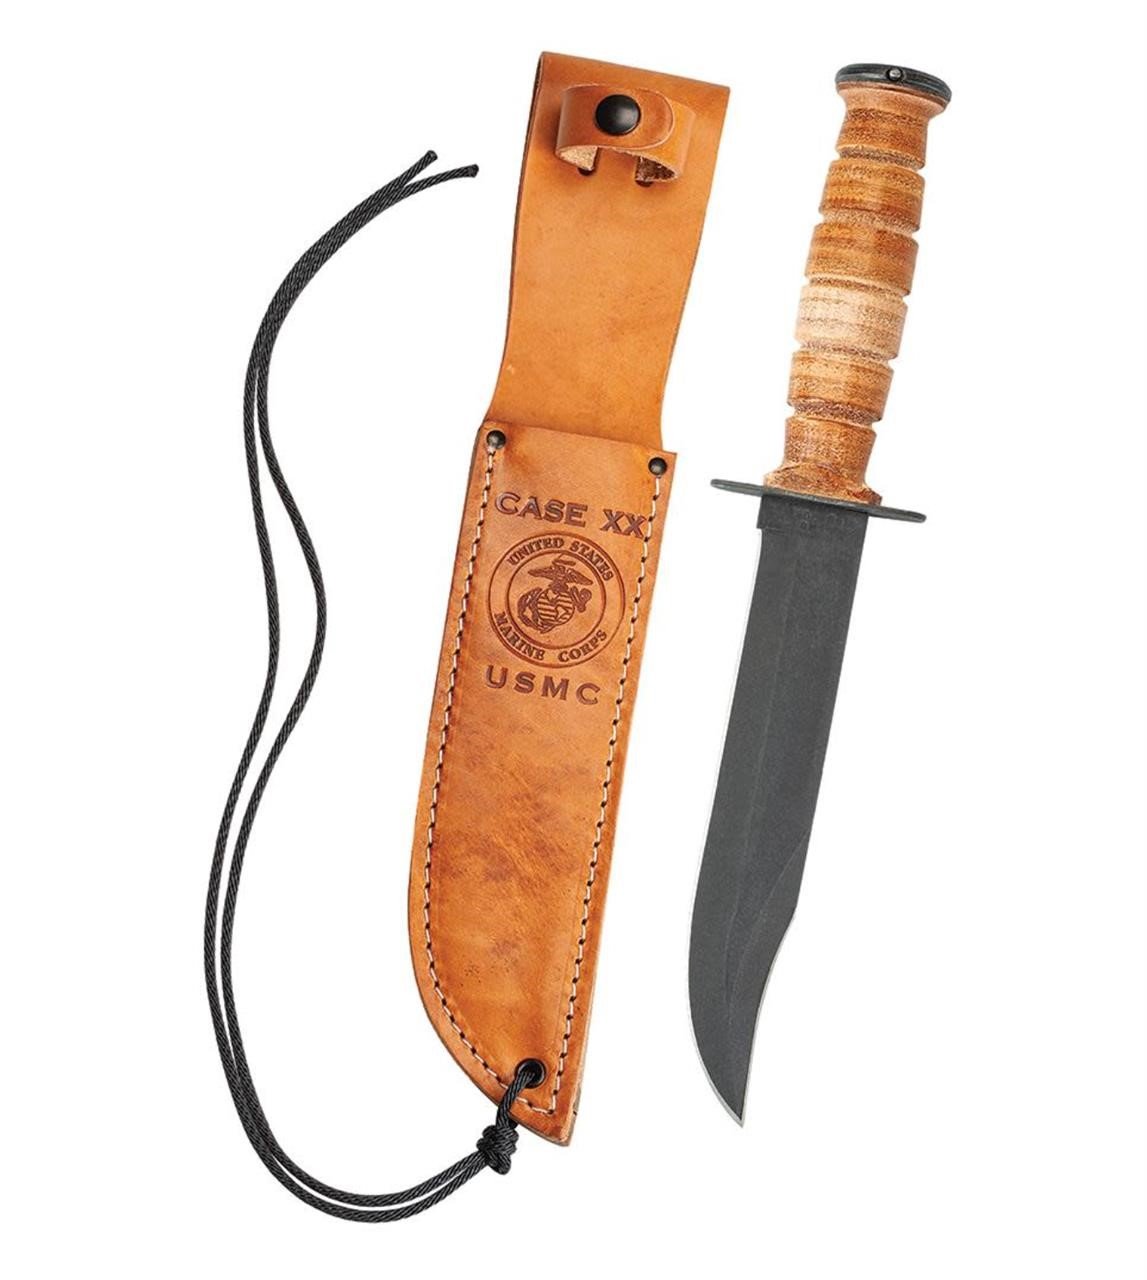 CASE XX Leather USMC® Knife w/ Leather Sheath NEW